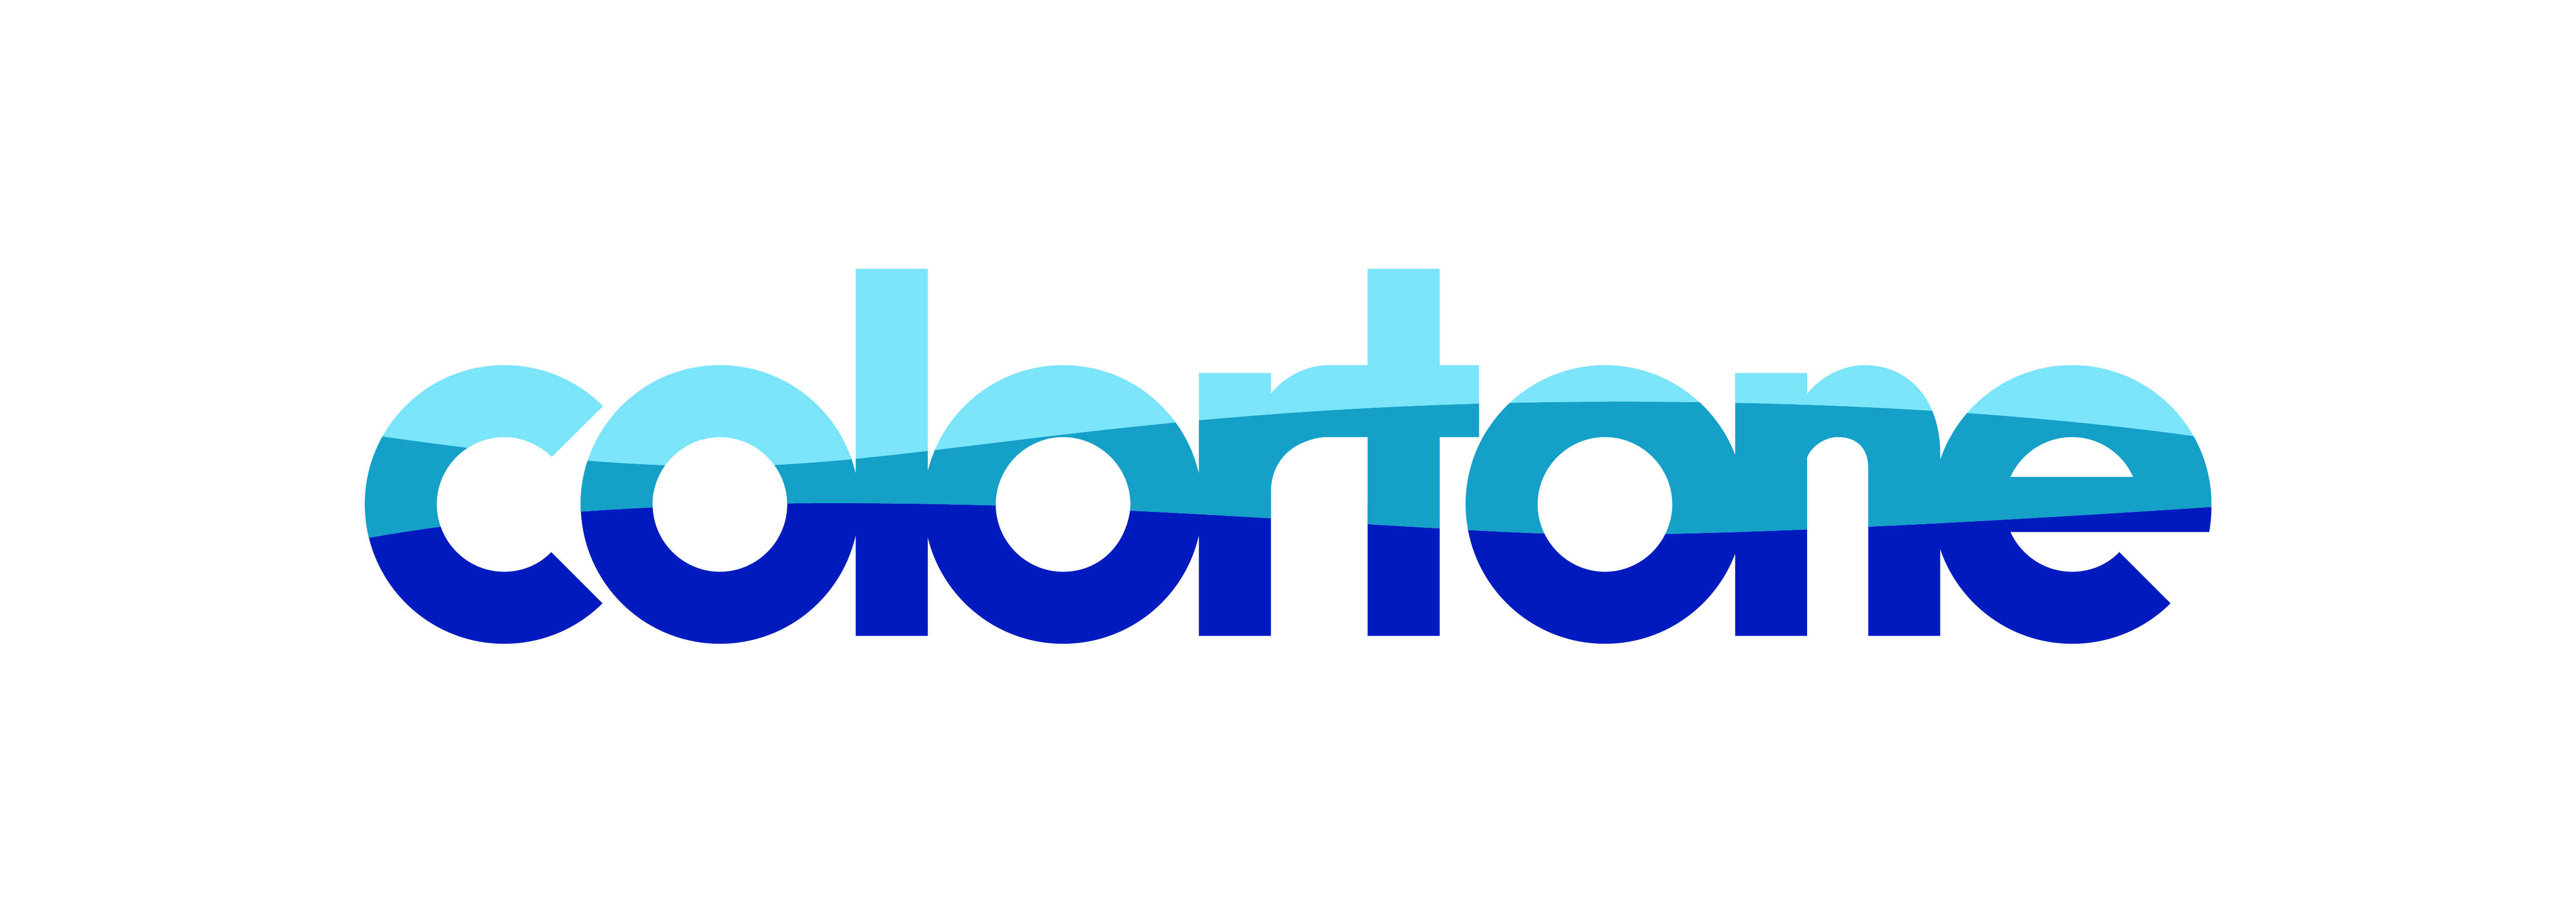 colortone-logo